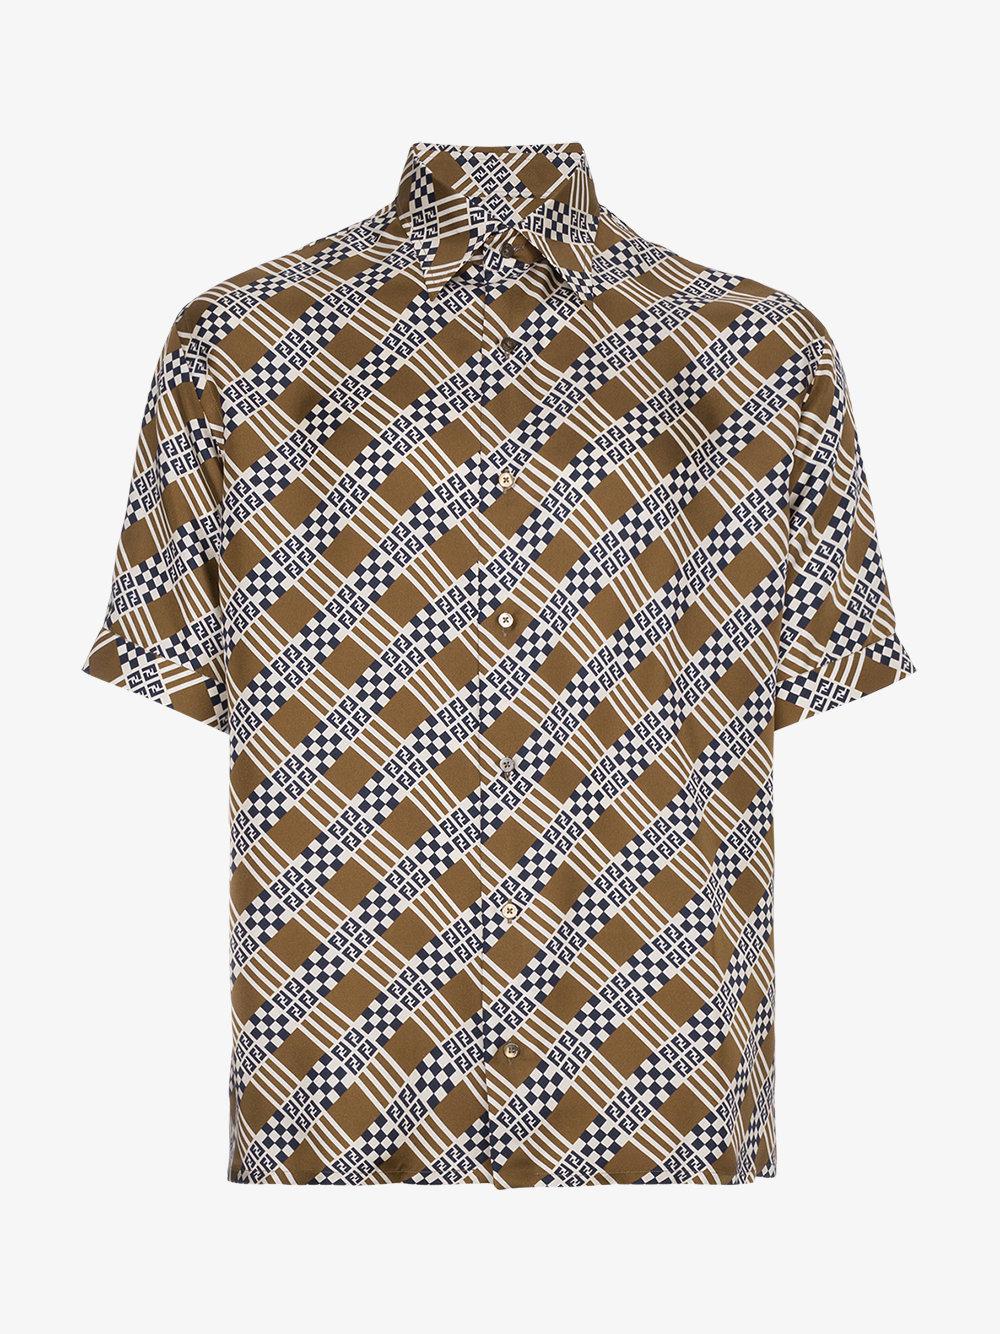 Fendi Damier Print Shirt in Brown for Men - Lyst